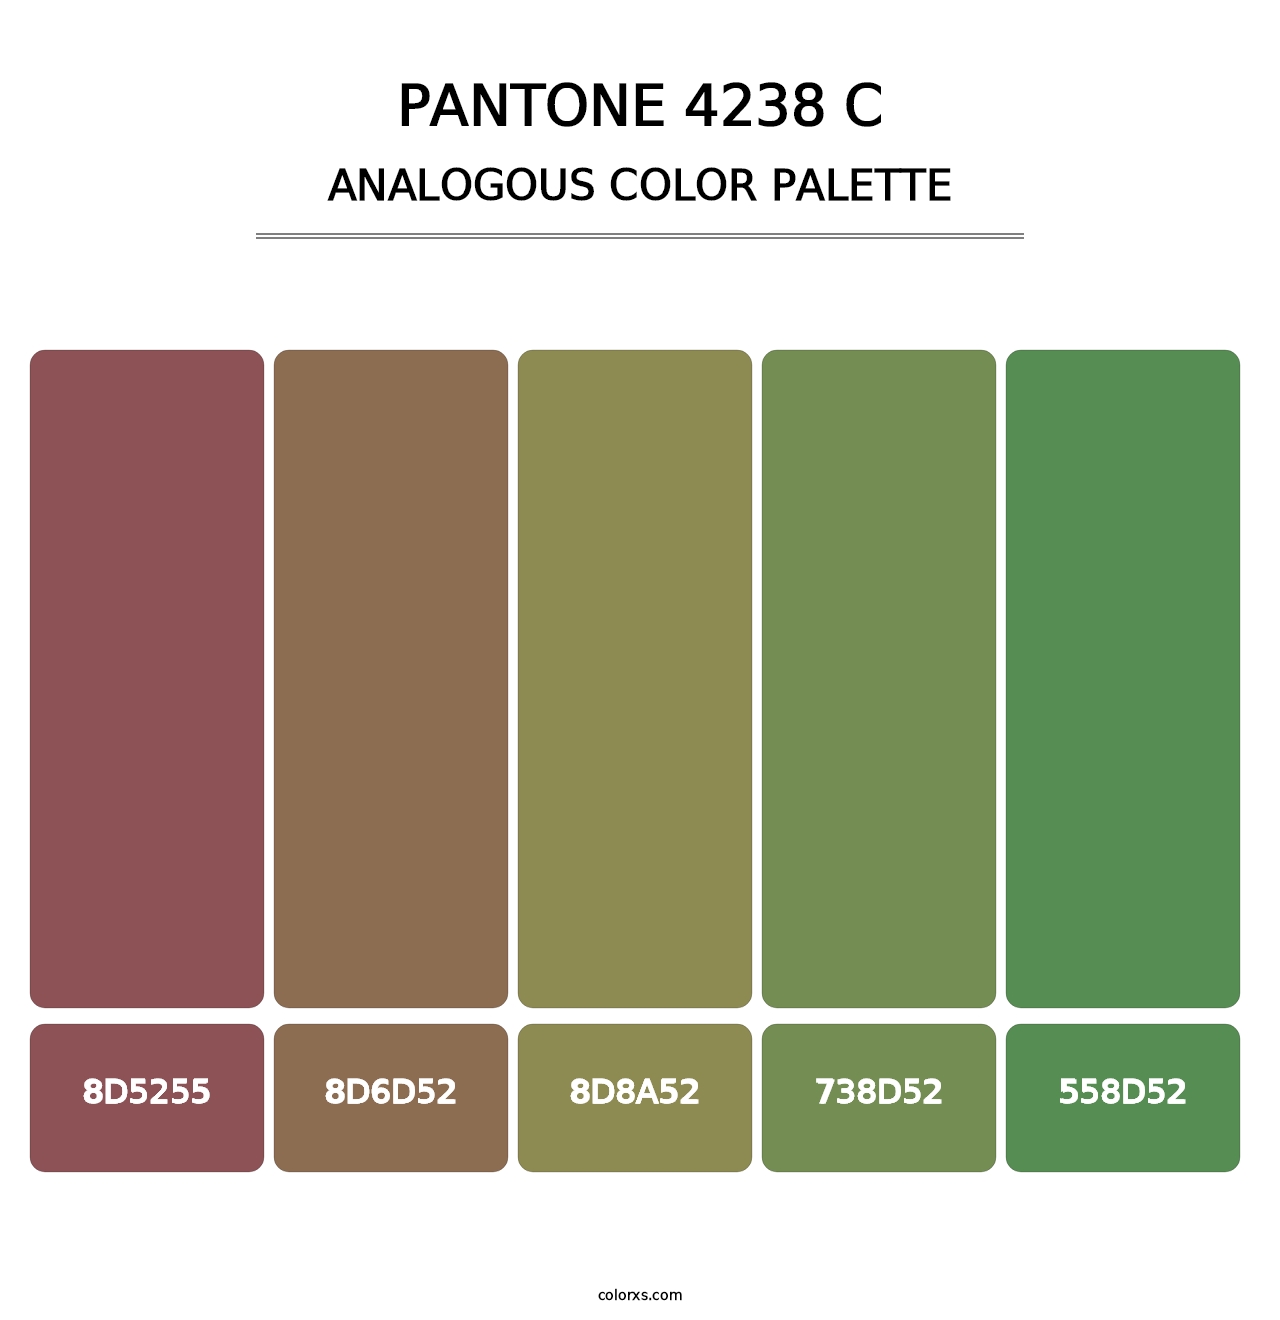 PANTONE 4238 C - Analogous Color Palette